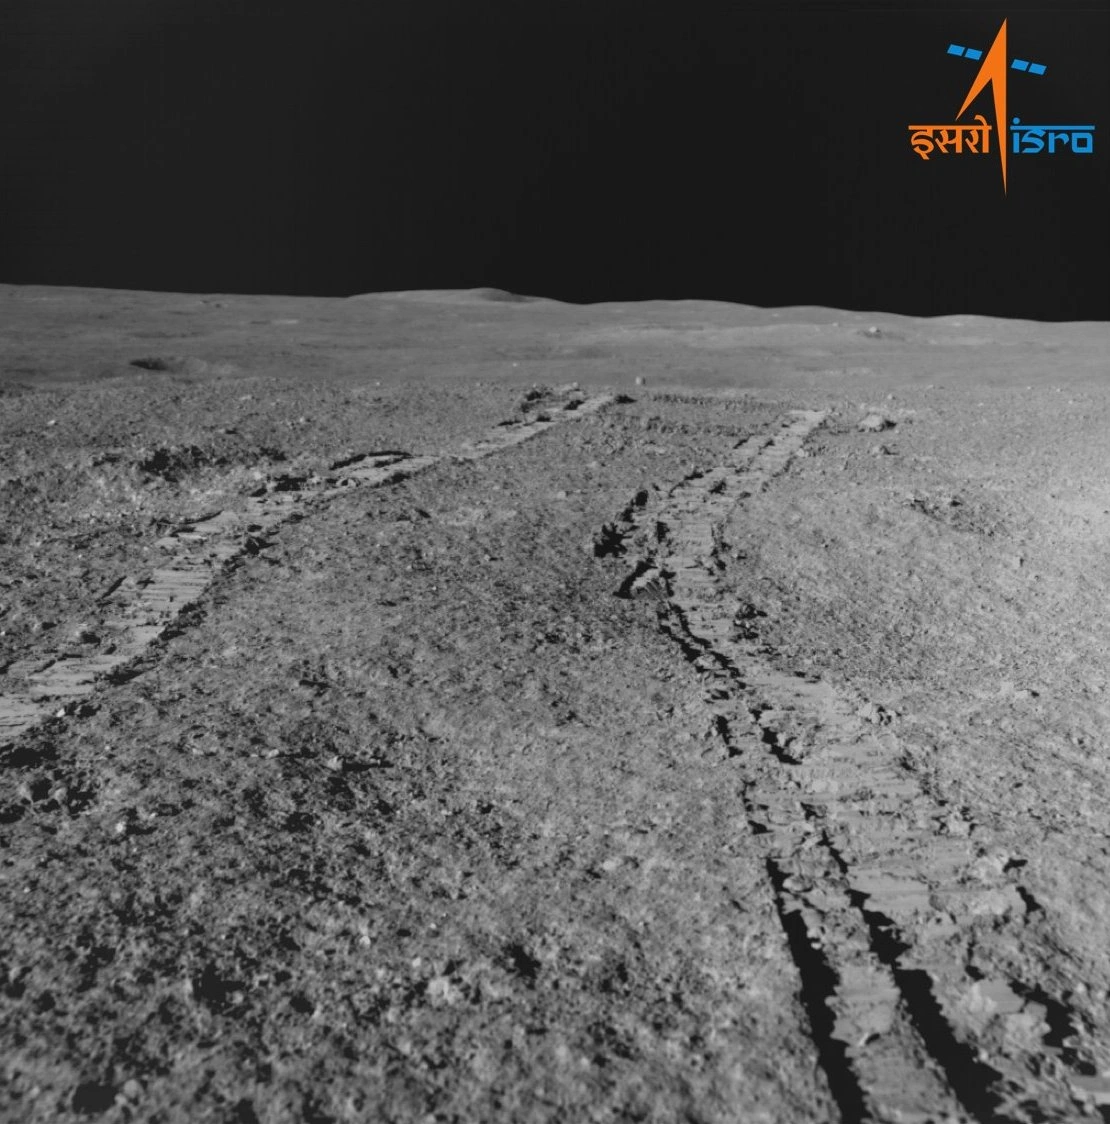 Індійський місяцехід Pragyan надіслав на Землю свої перші фотографії Місяця (фото)